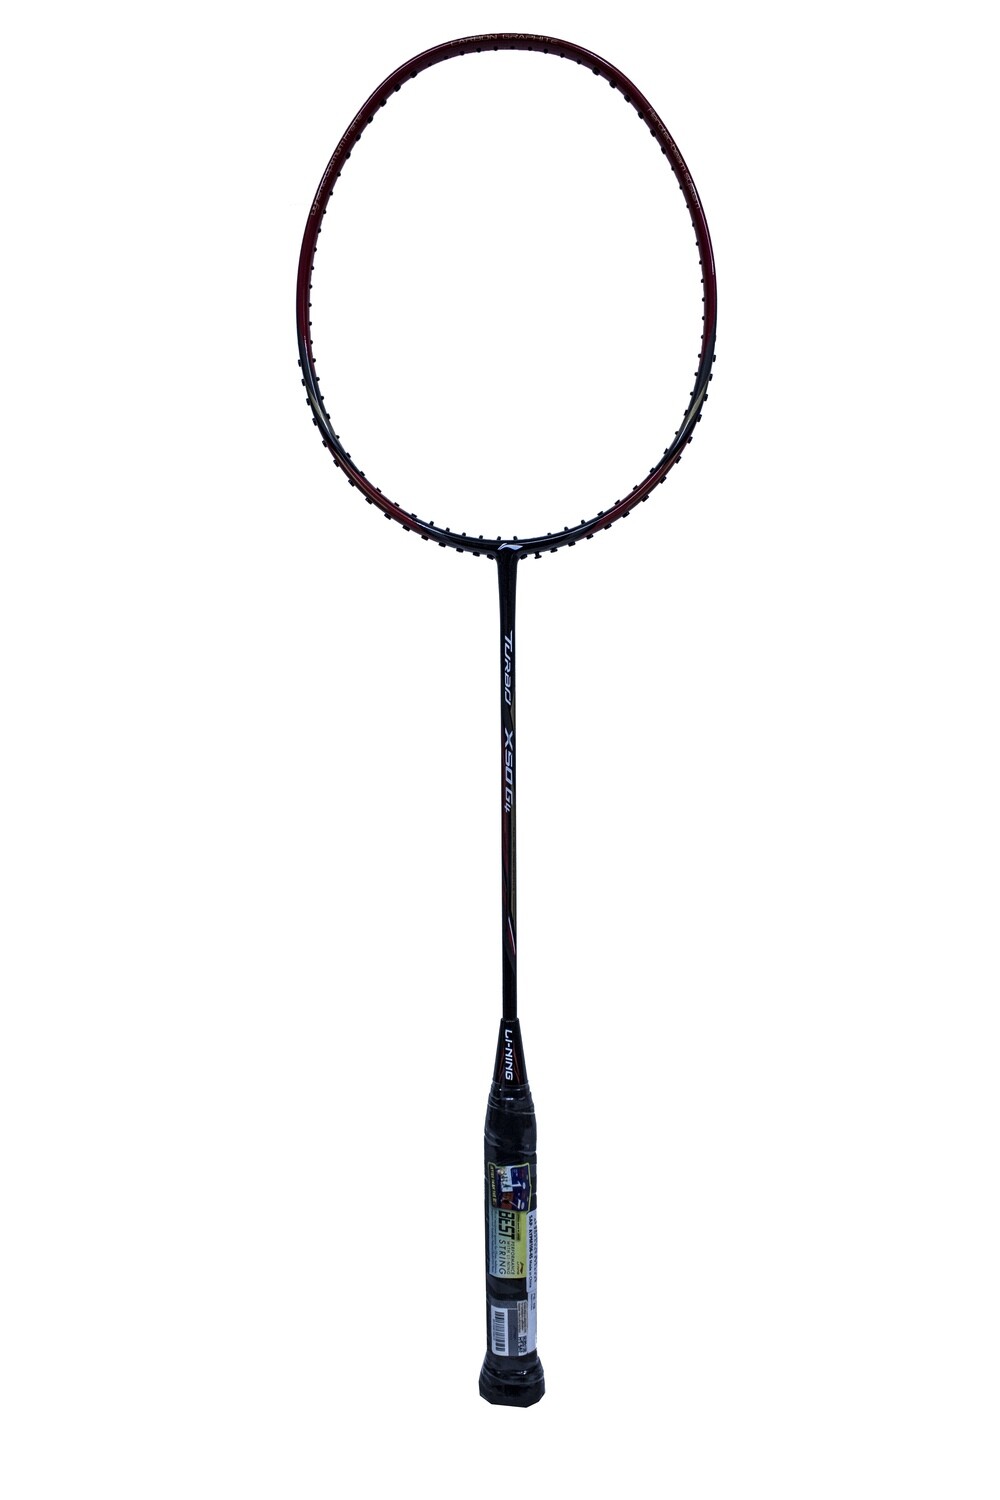 LI-NING Turbo X50 G4 Badminton Racquet -